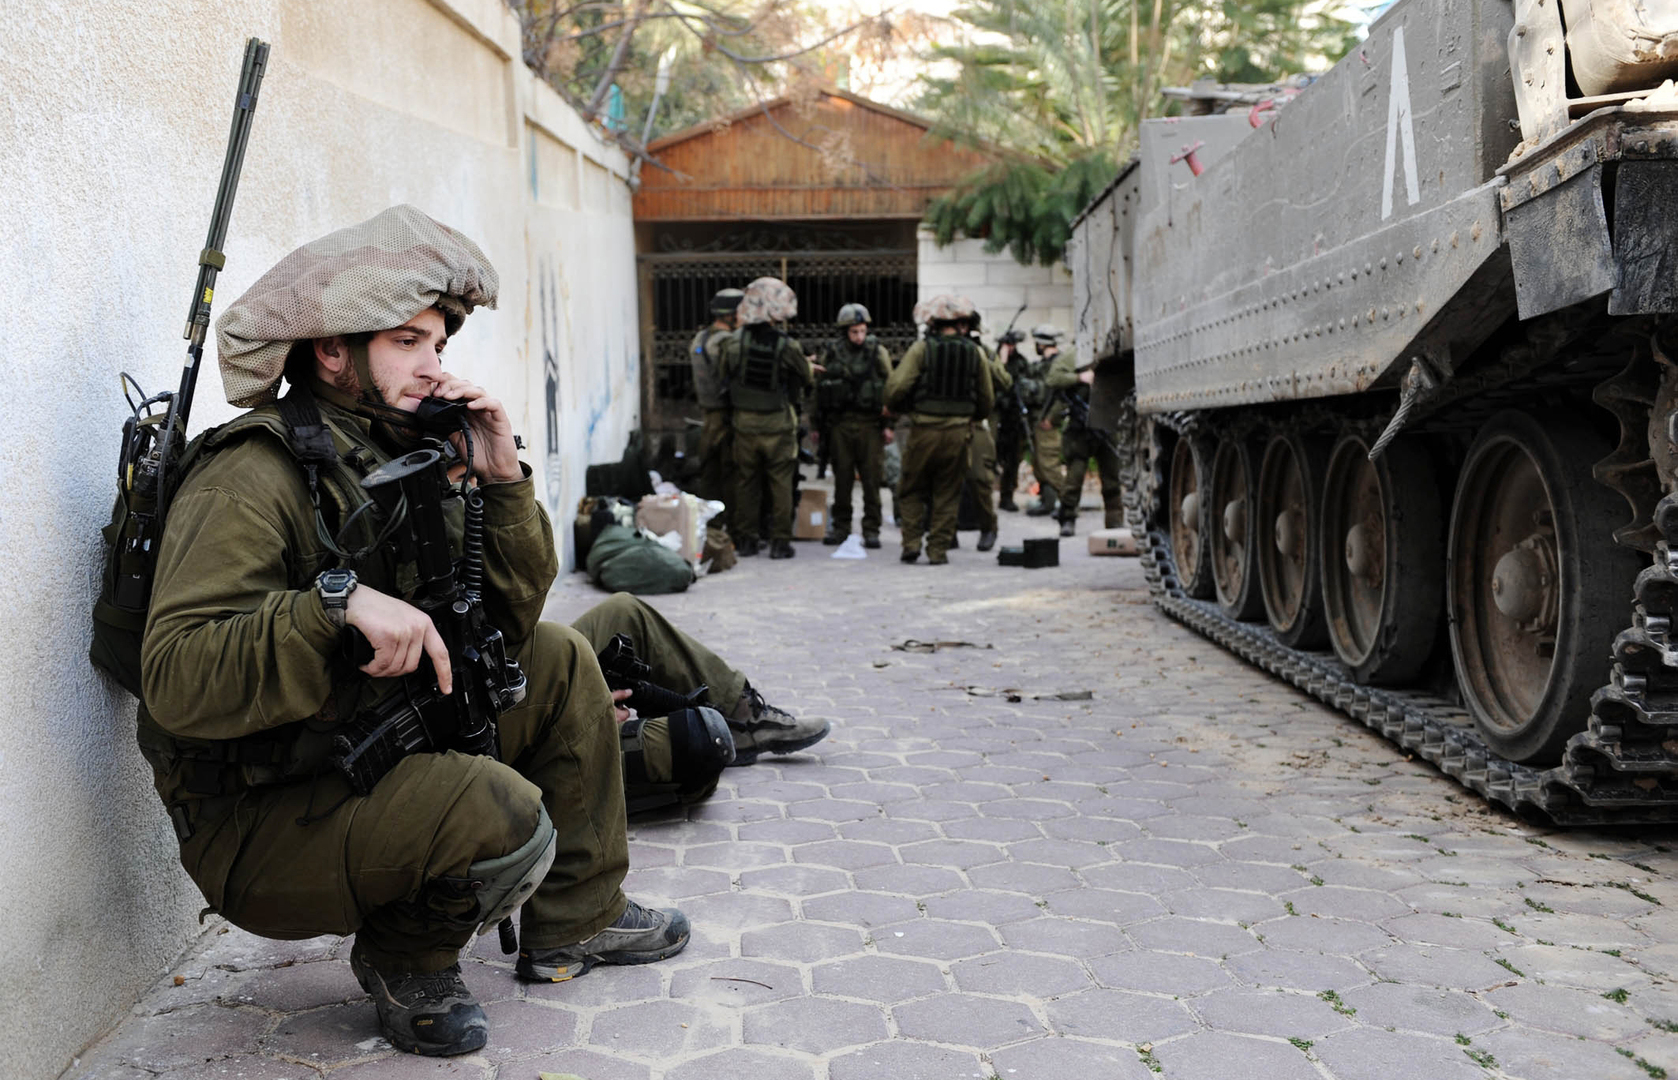 اشتباكات عنيفة لا تزال جارية في سديروت (فيديو)